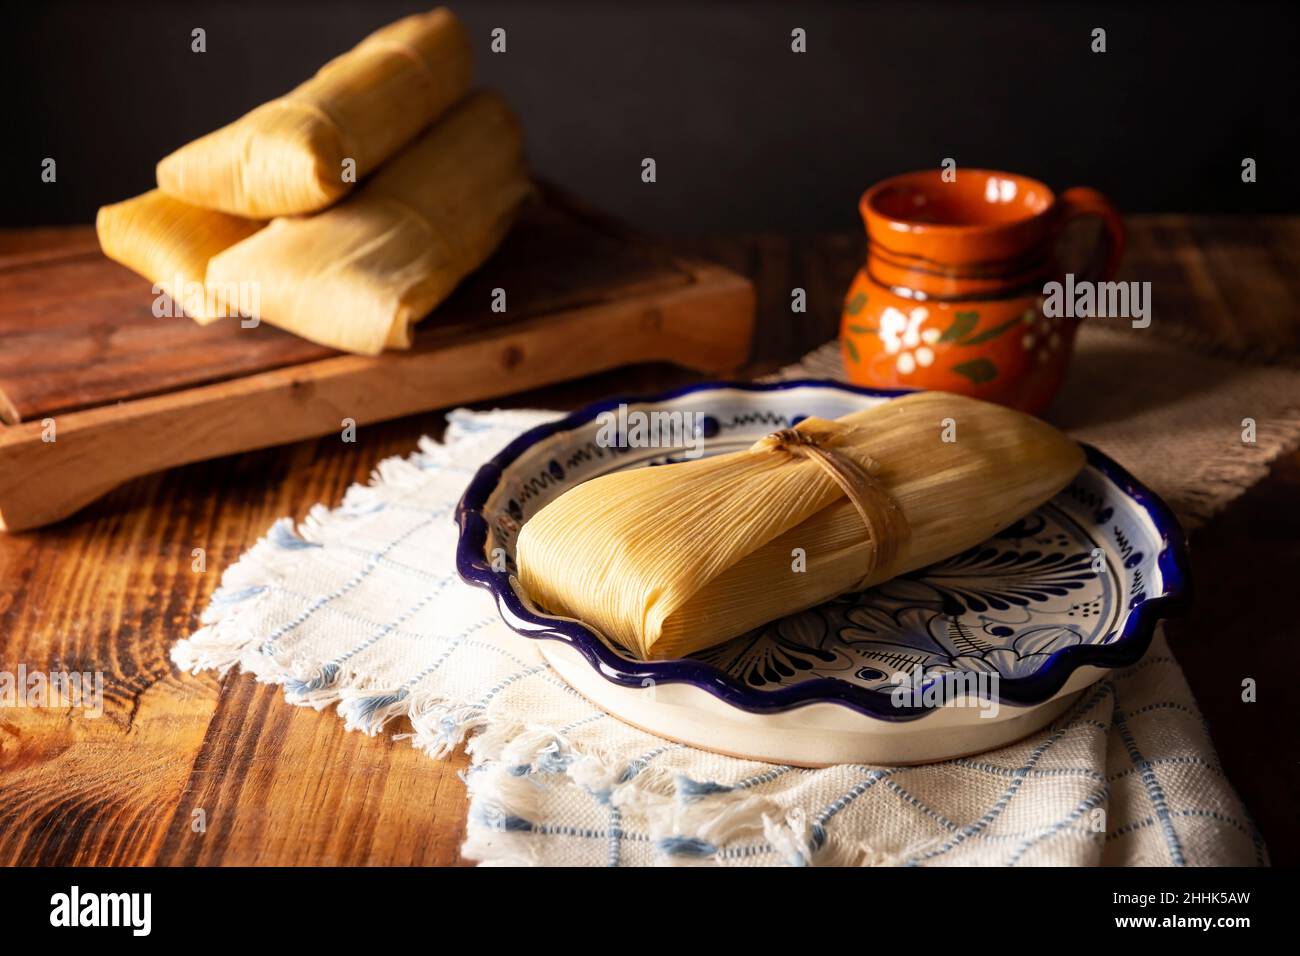 Plat préhispanique typique du Mexique et de certains pays d'Amérique latine.Pâte de maïs enveloppée de feuilles de maïs.Les tamales sont cuits à la vapeur. Banque D'Images